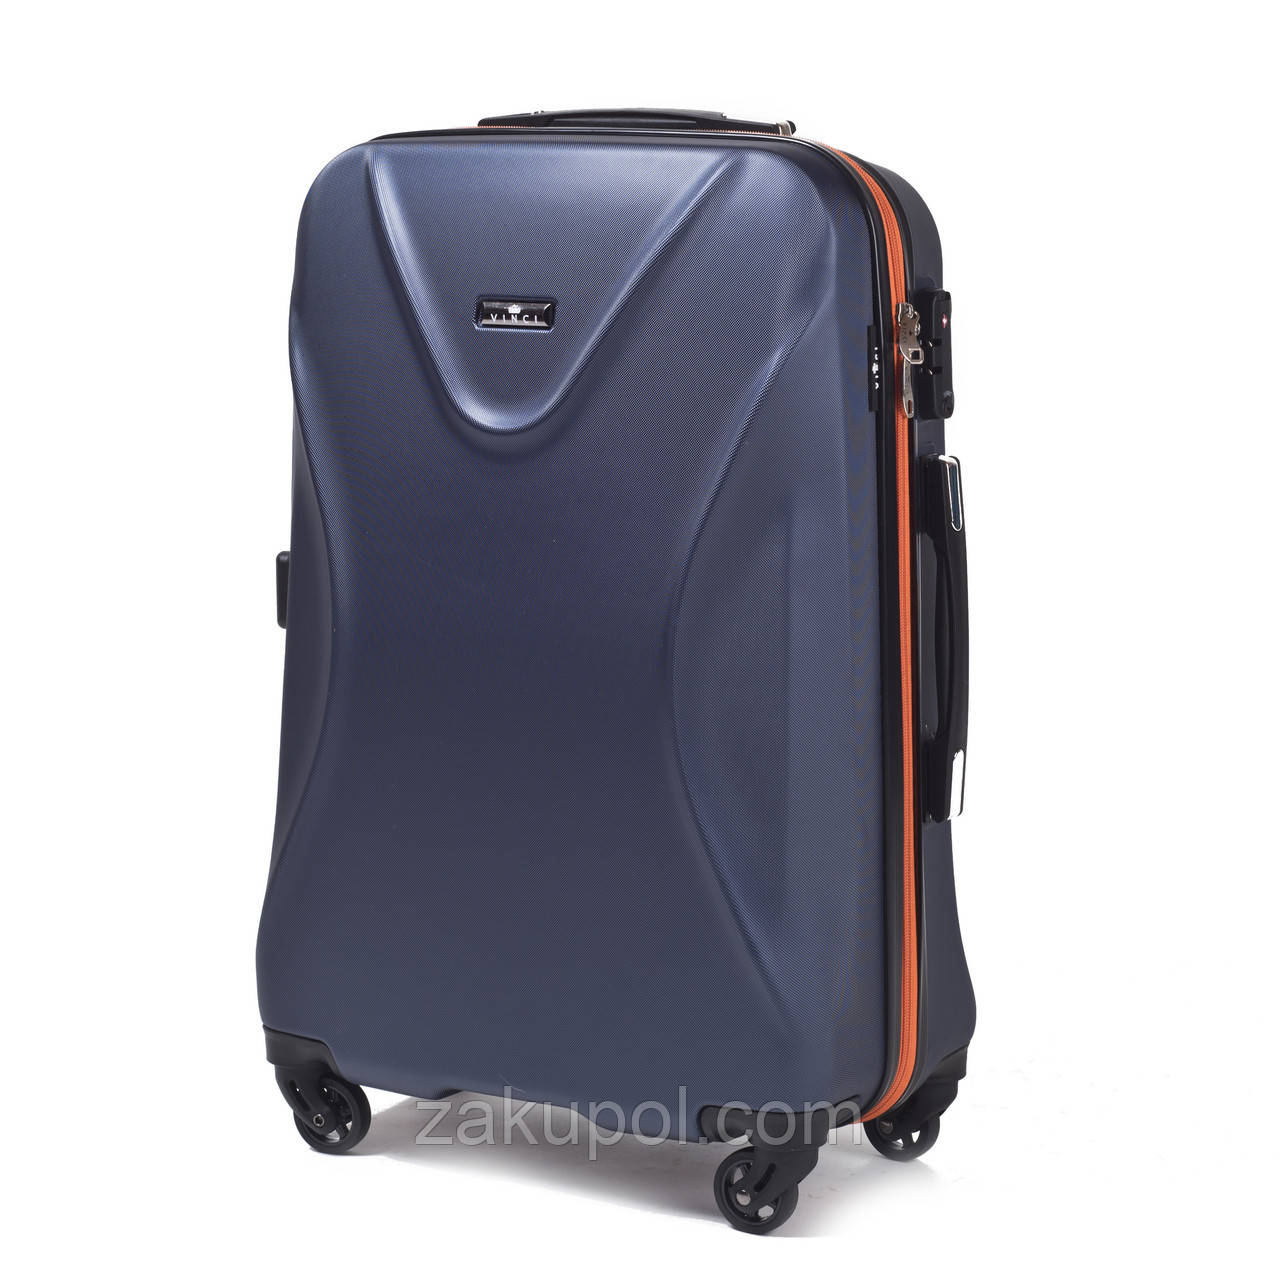 Ультралегкий валізу VINCI 518 (Великий) Синій